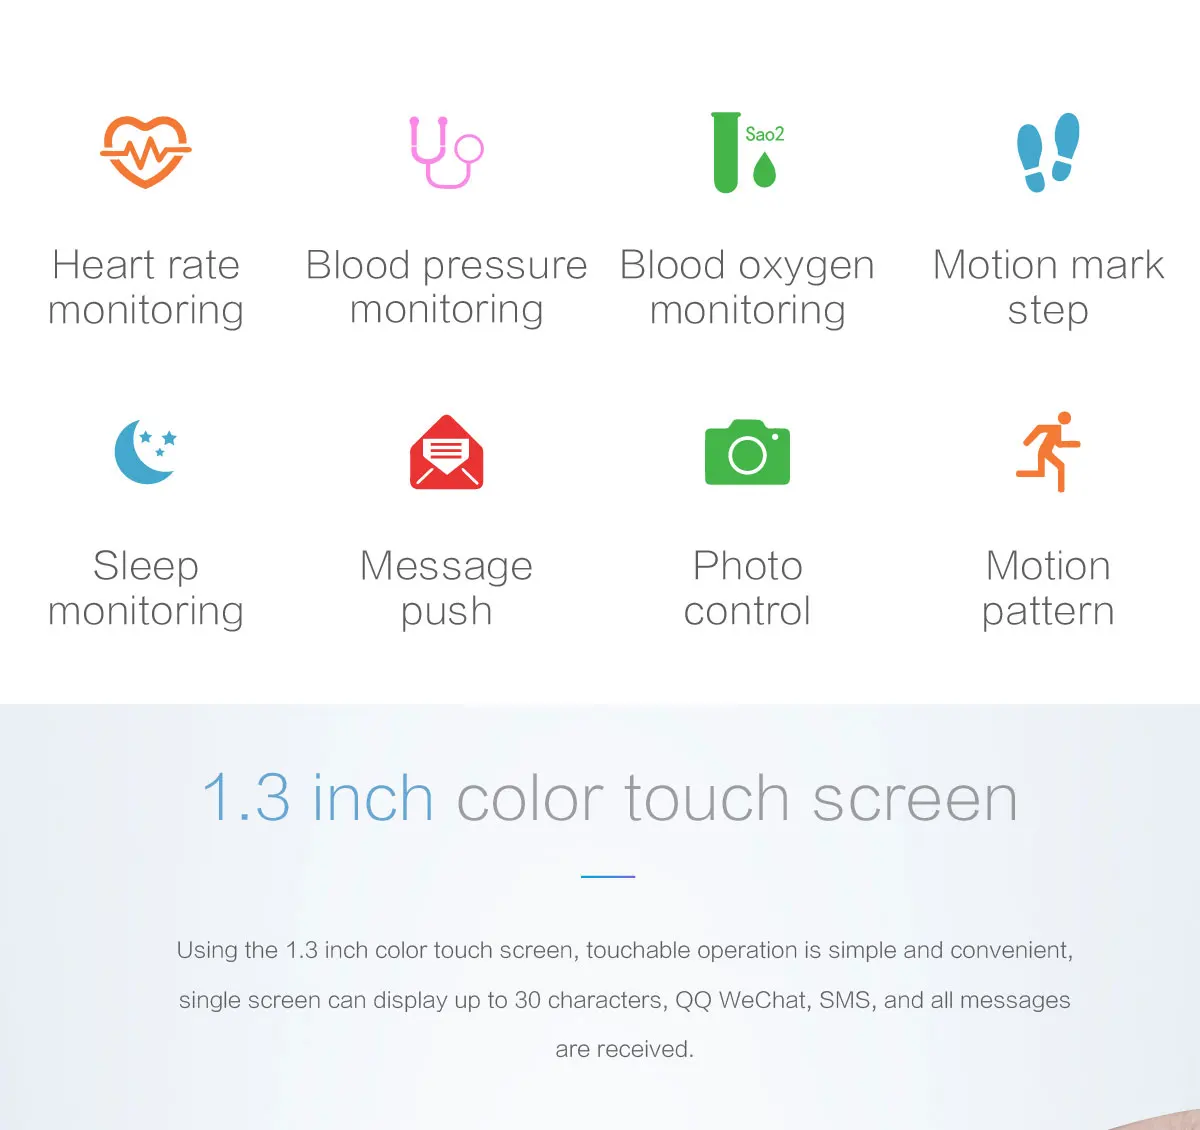 IP68 Водонепроницаемые Смарт-часы P68 пульсометр кровяное давление умные часы для фитнеса спортивный трекер для Xiaomi Iphone